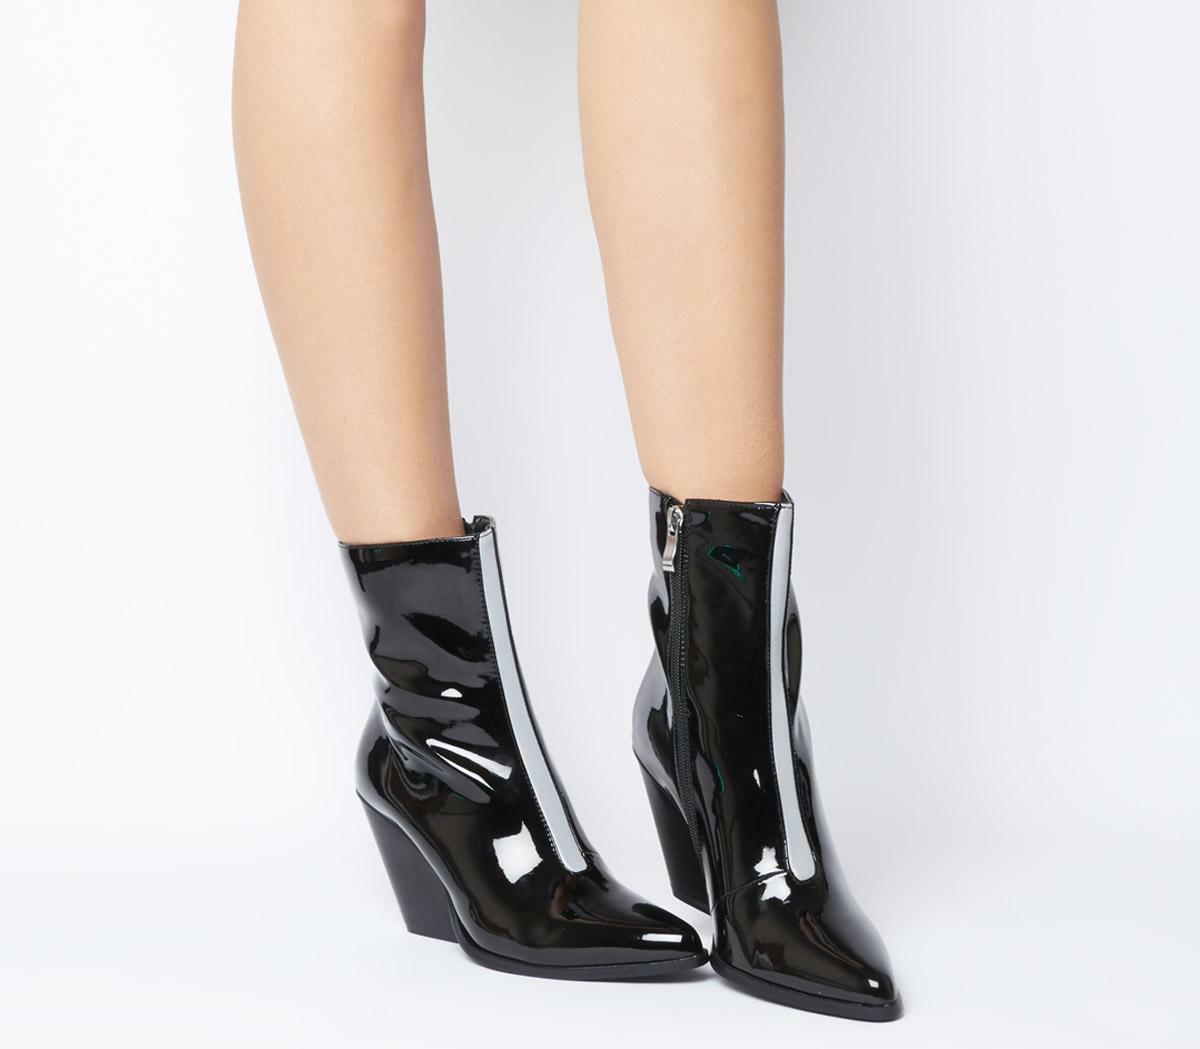 Odd sizes Womens Ego Alba Heeled Boot Black Reflective UK Sizes Right 4/Left 3